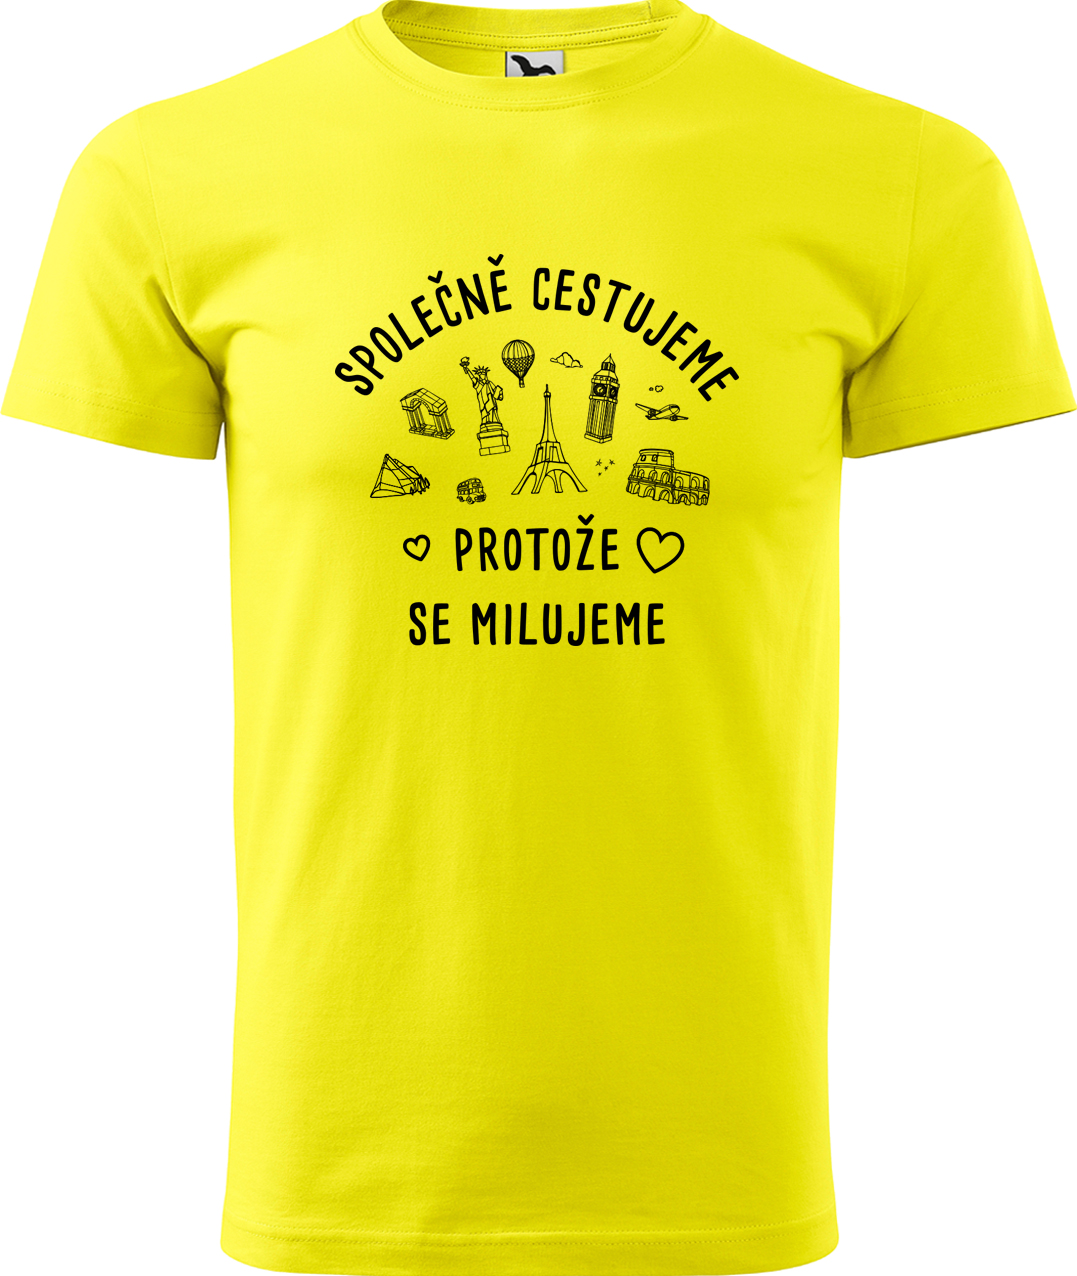 Pánské cestovatelské tričko - Společně cestujeme protože se milujeme Velikost: S, Barva: Žlutá (04), Střih: pánský